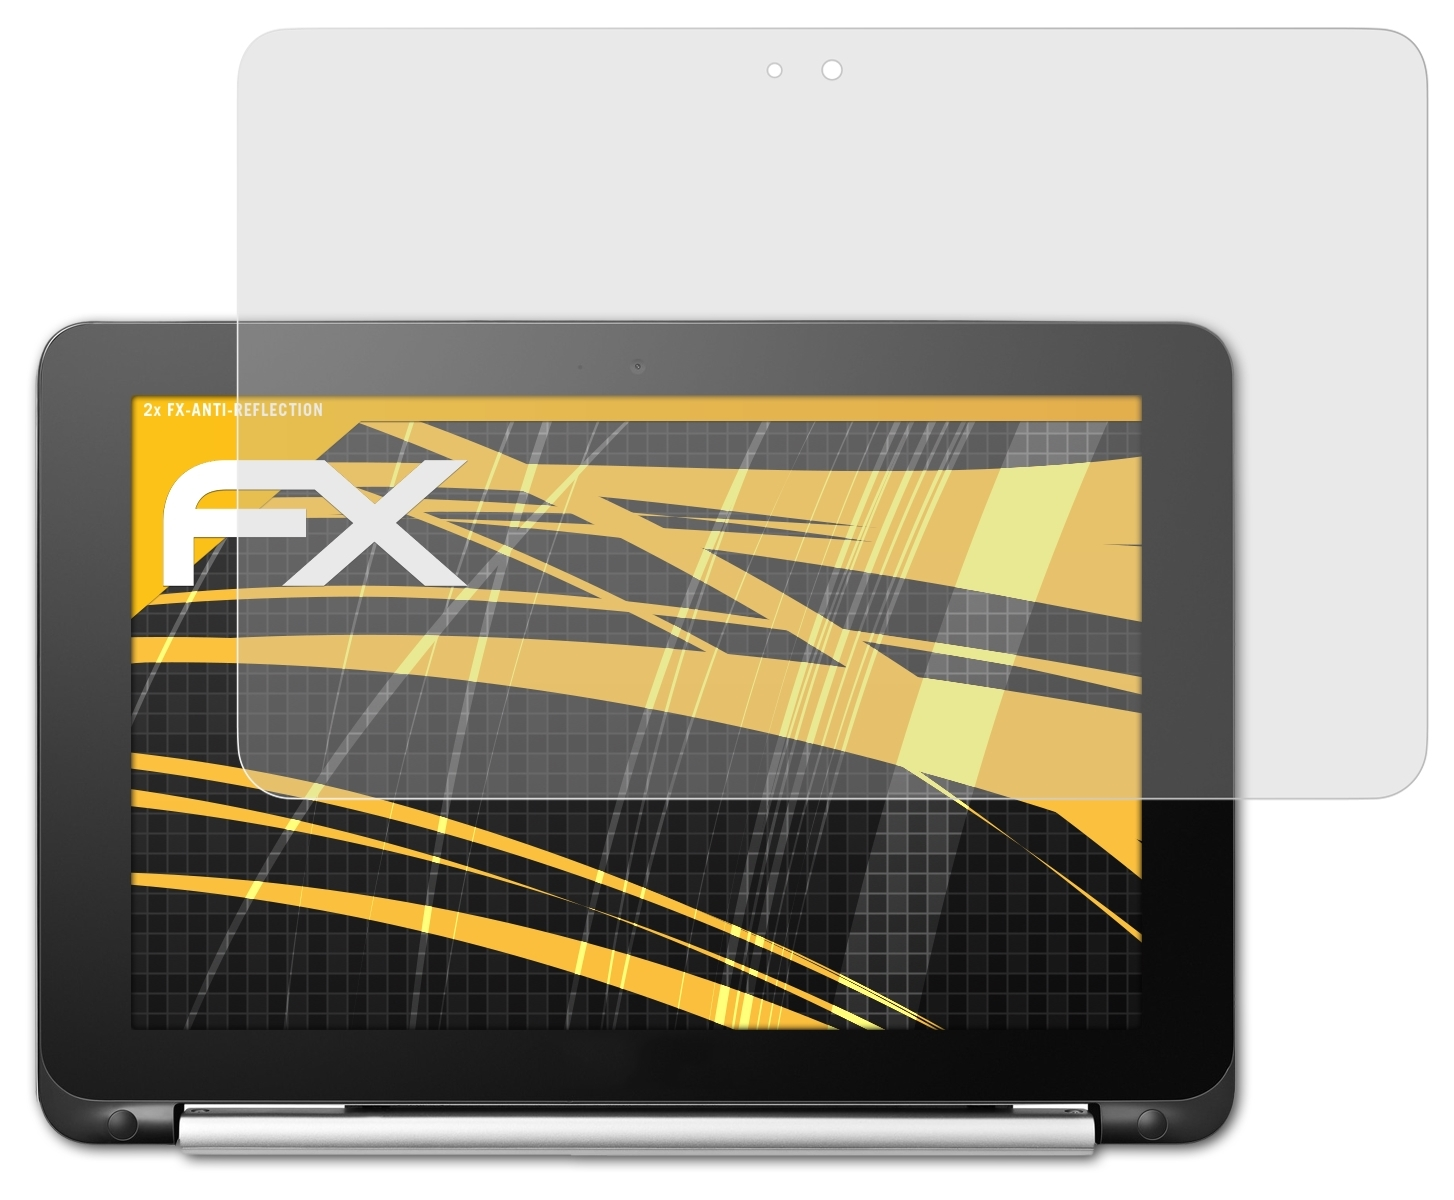 ATFOLIX 2x Displayschutz(für Flip Asus Chromebook C101PA) FX-Antireflex